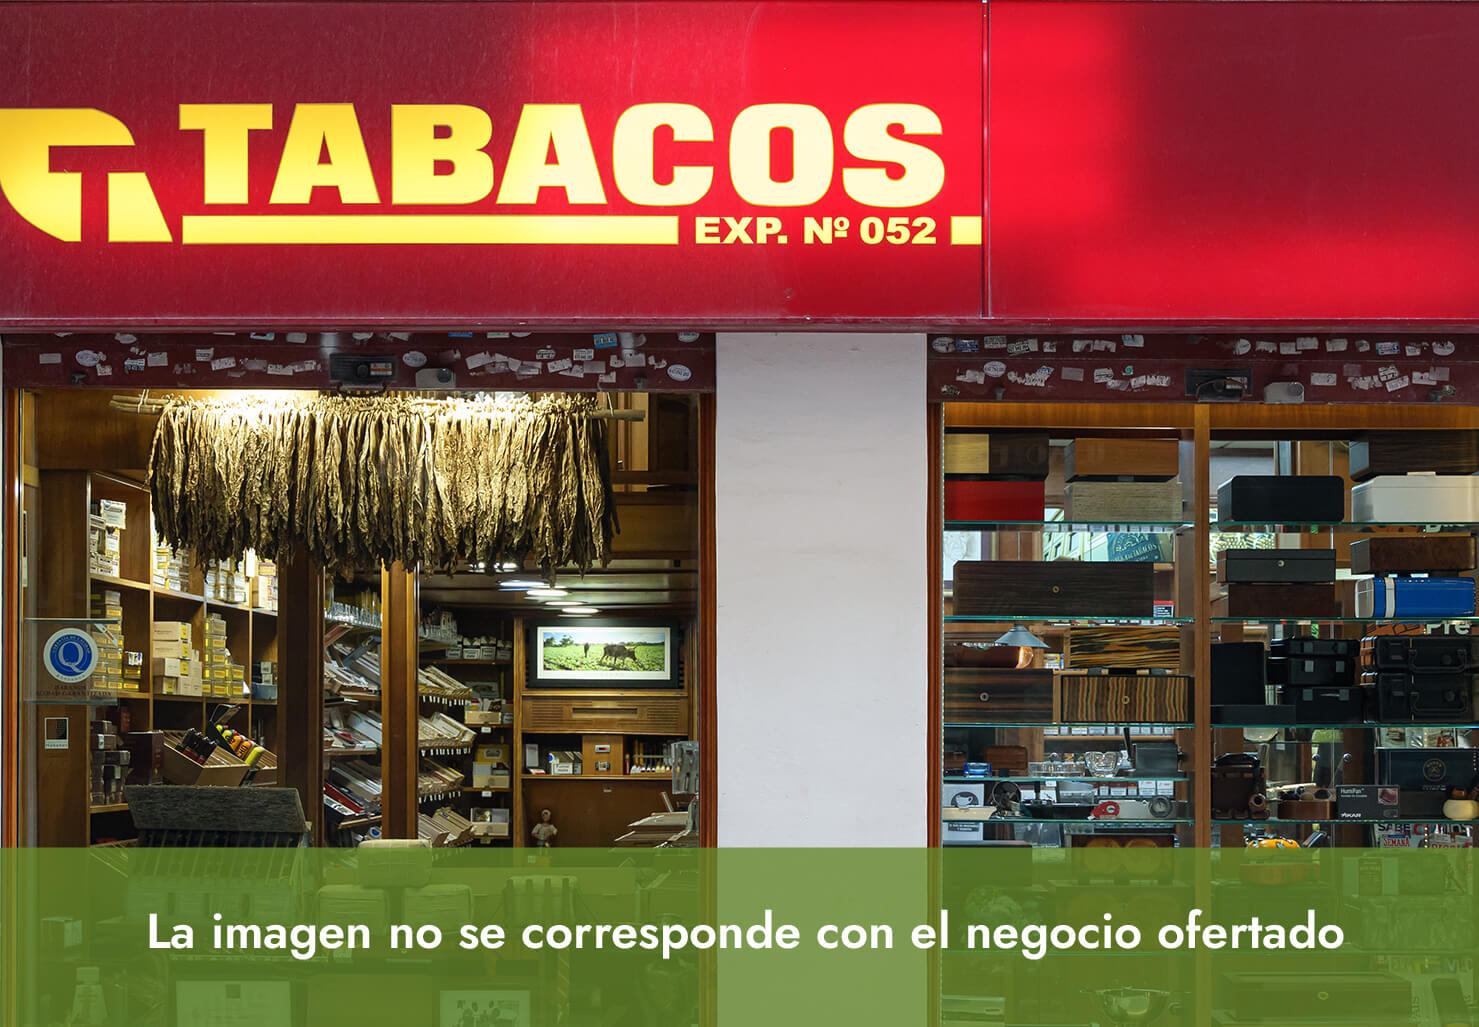 Lotoestanc, venta Expendeduría de Tabaco y Timbre en Alcoy